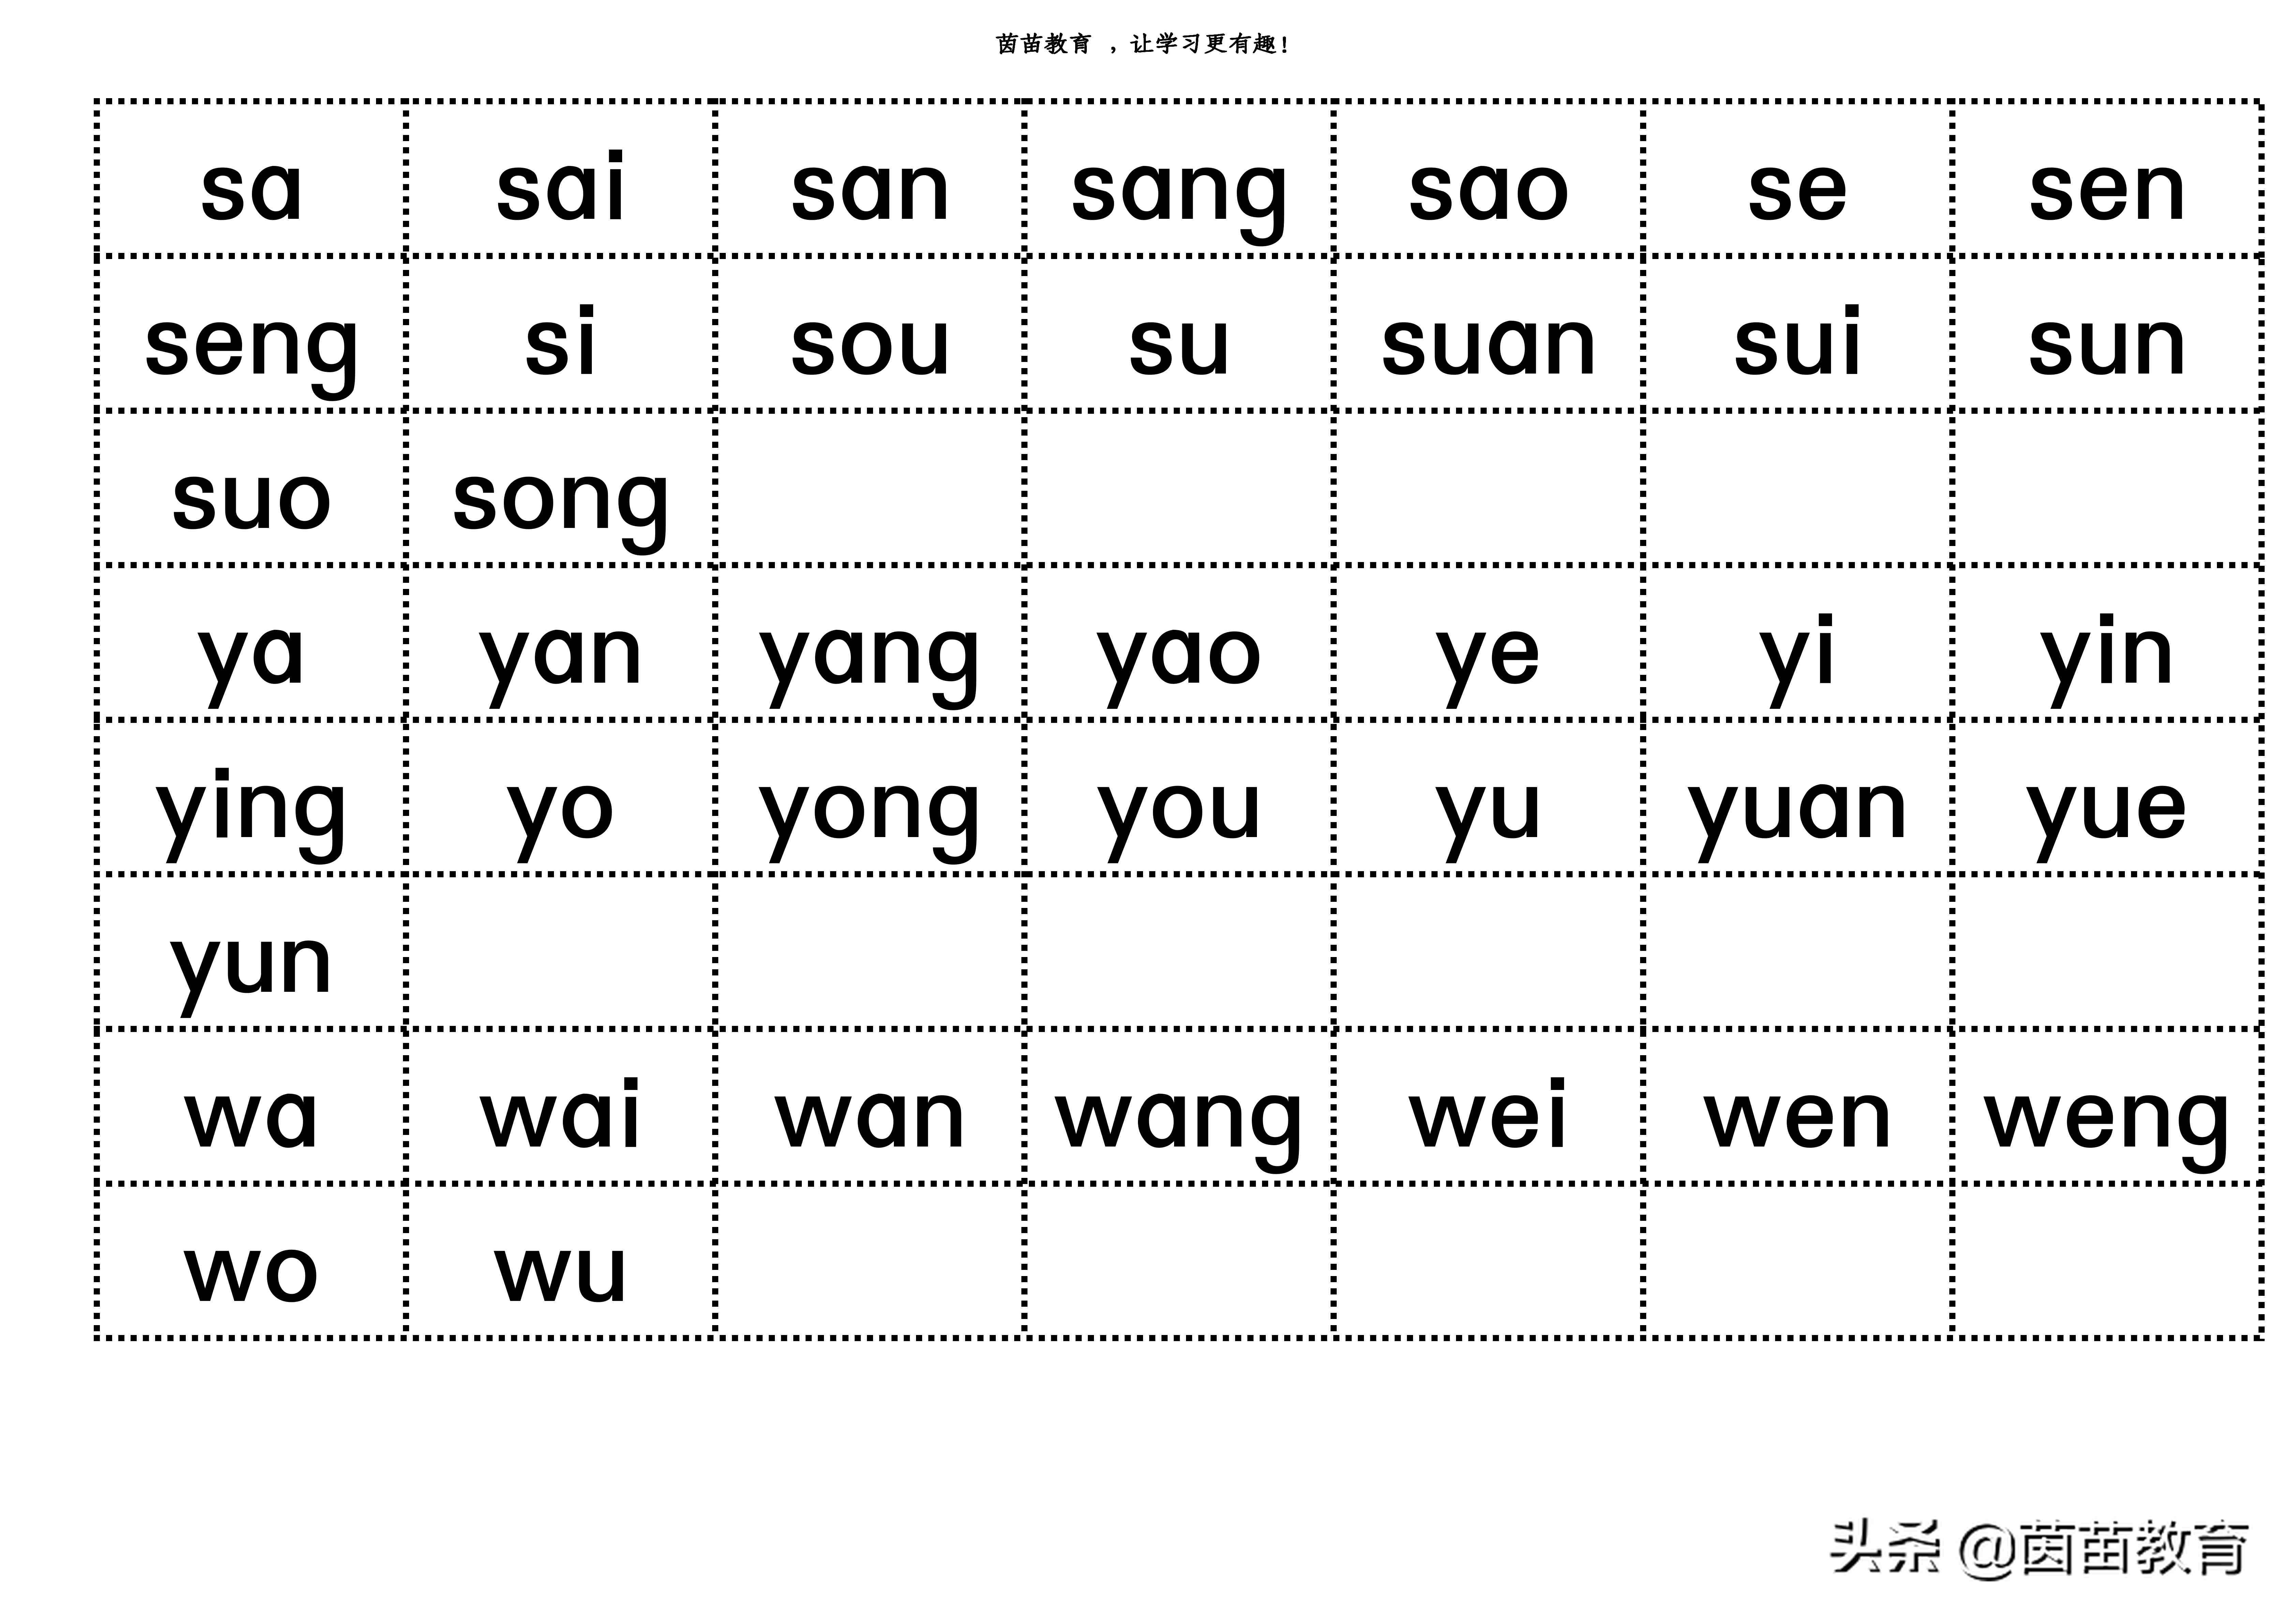 如何学好汉语拼音？听听老师怎么说？